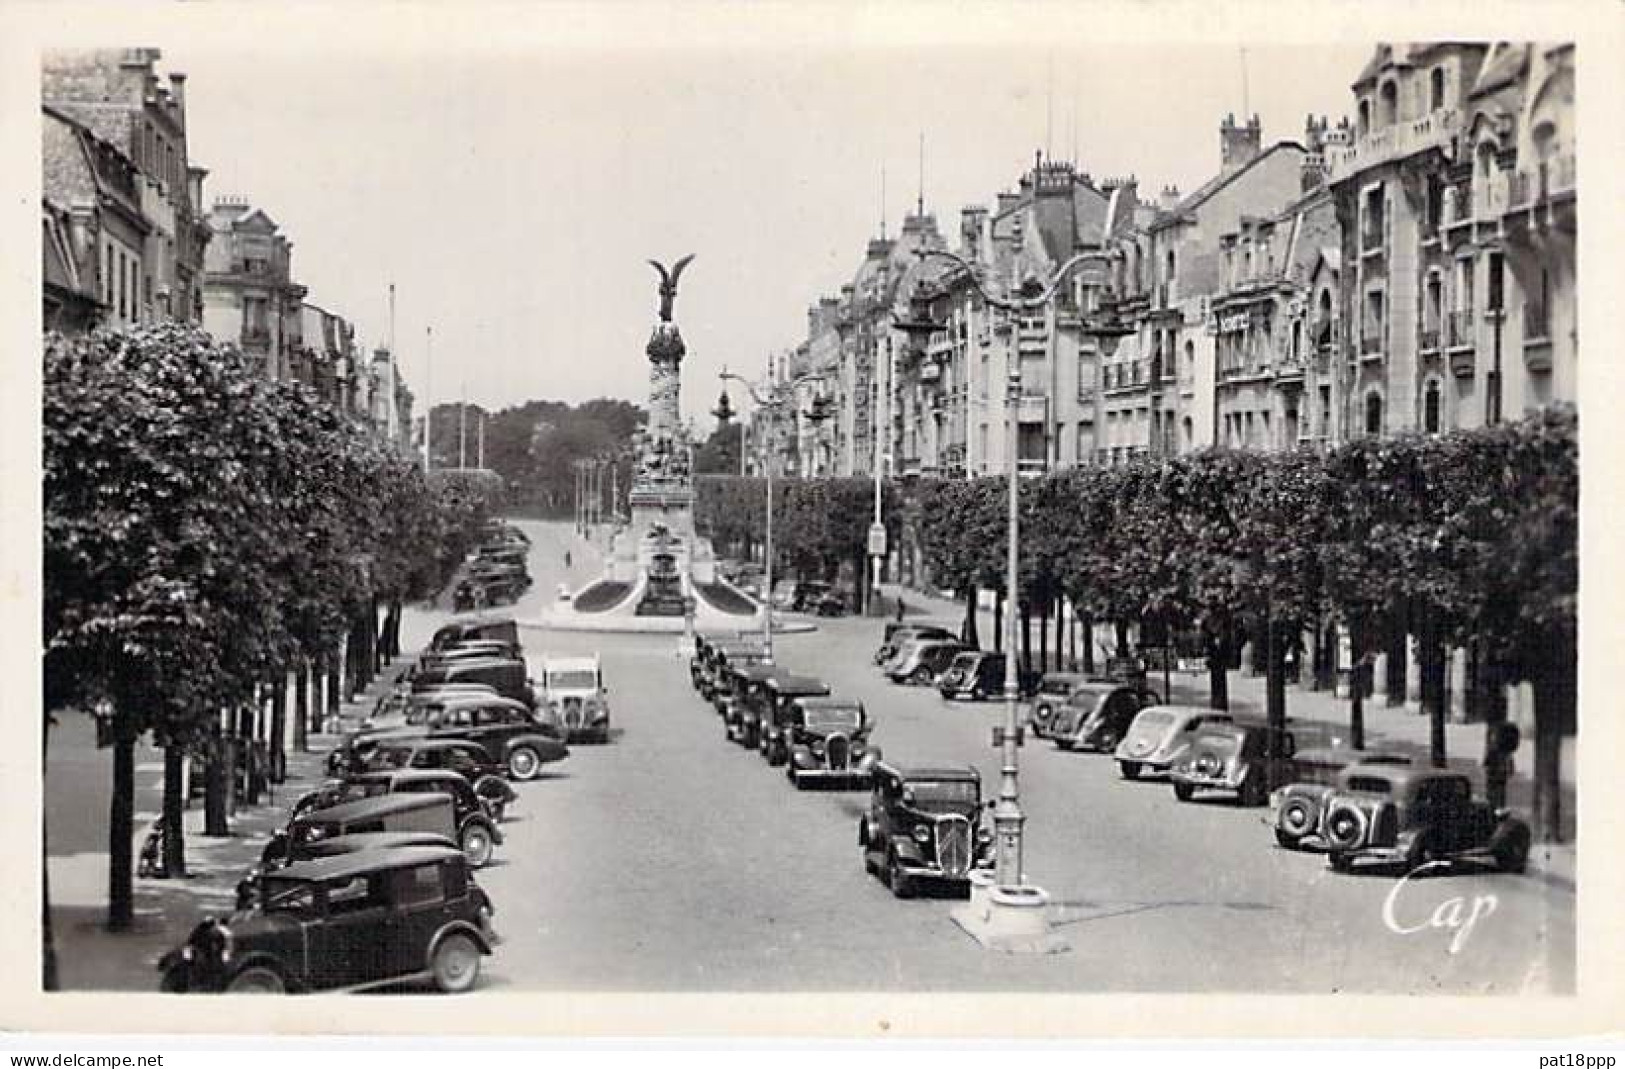 FRANCE - Lot De 20 CPSM Photos Noir Et Blanc Format CPA Années 1945-1960's En BON ETAT (Cf Détails Dans Description) - 5 - 99 Cartoline